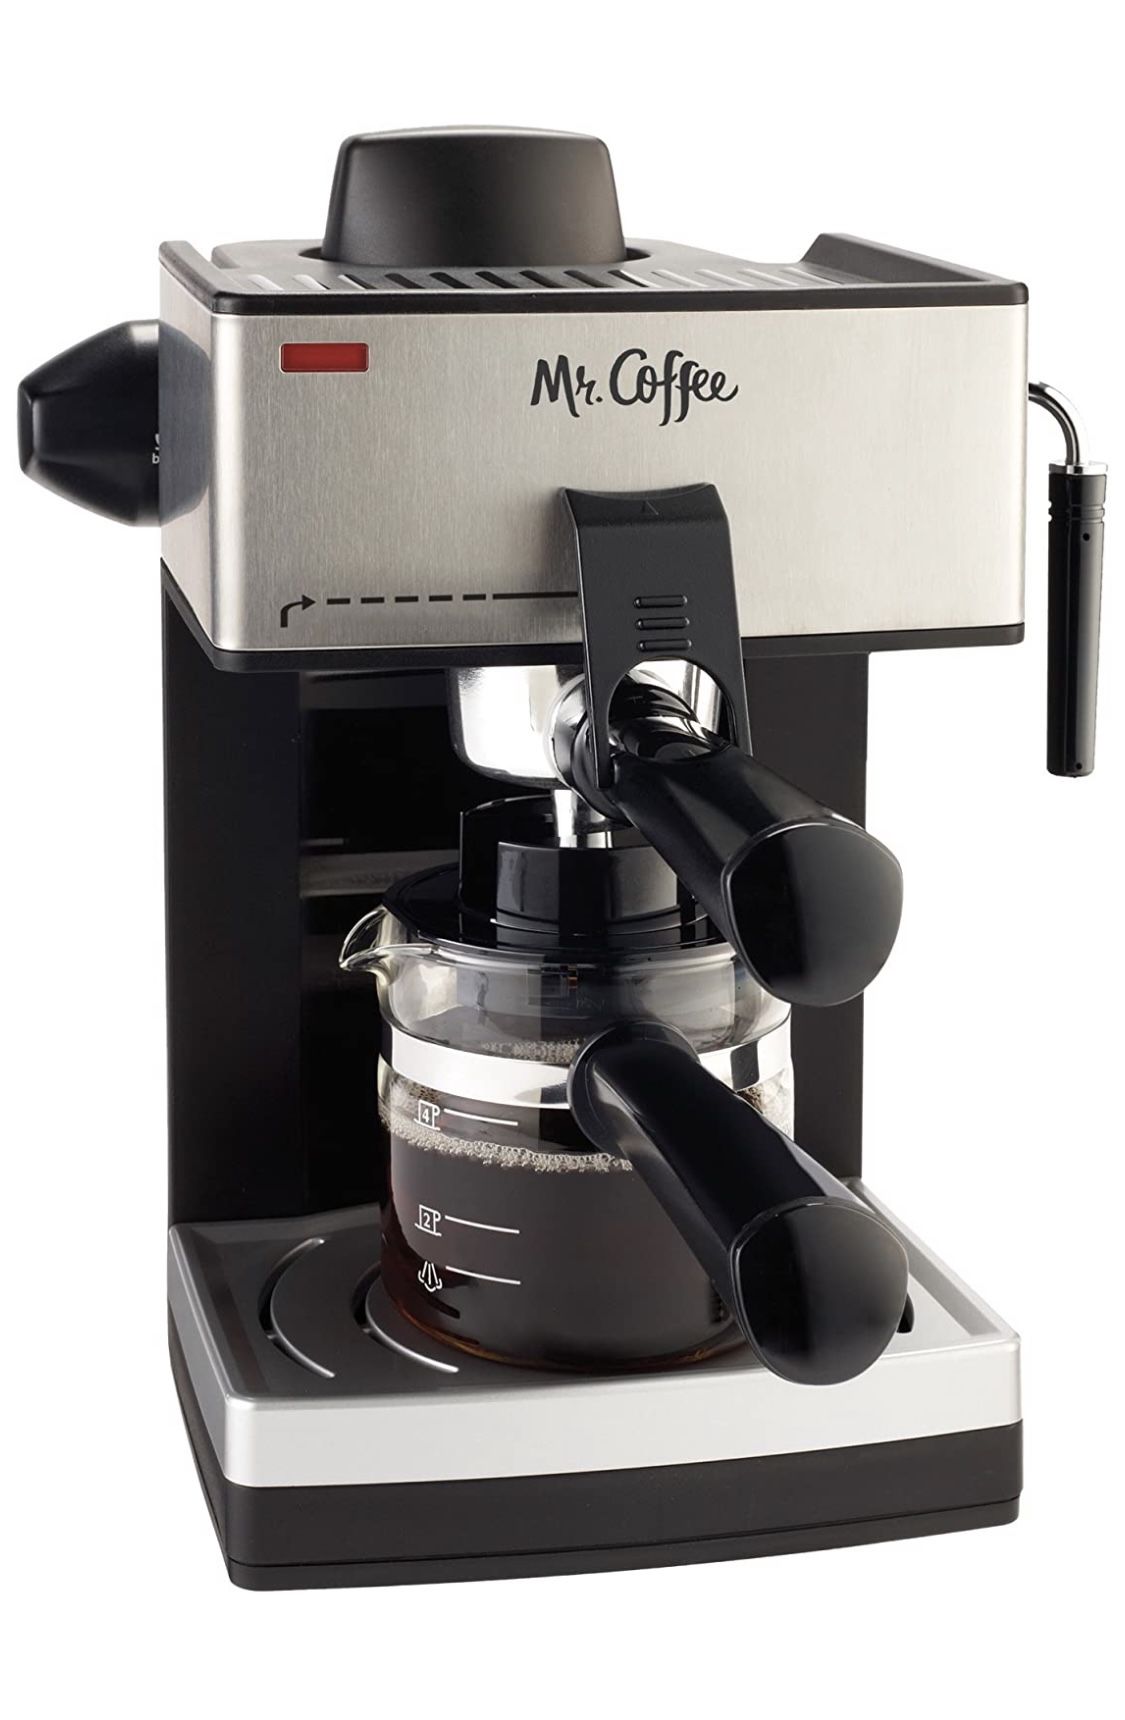 Espresso-Coffee Maker Mr Coffee New 